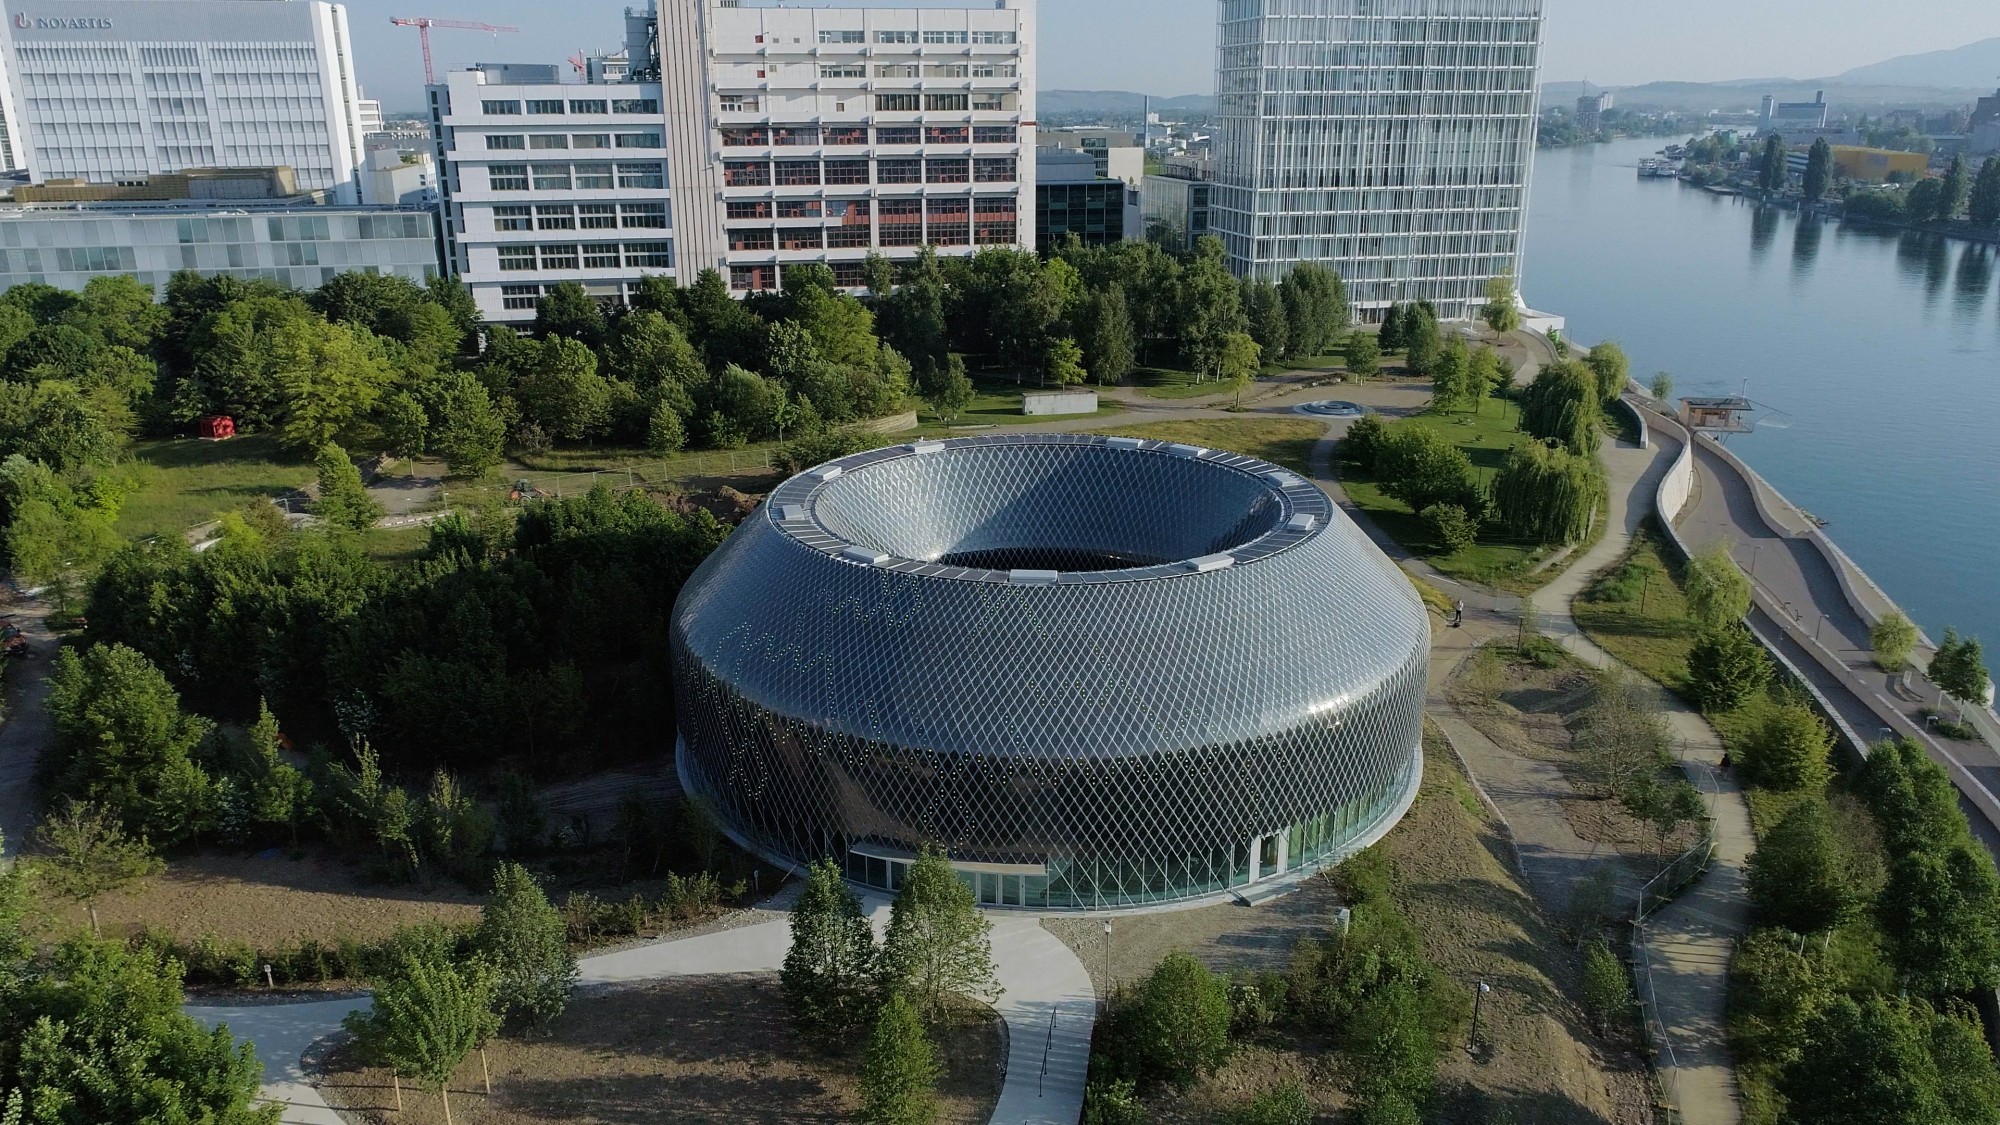 La société pharmaceutique vient d’inaugurer son nouveau centre de conférence à Bâle, le Pavillon Novartis.